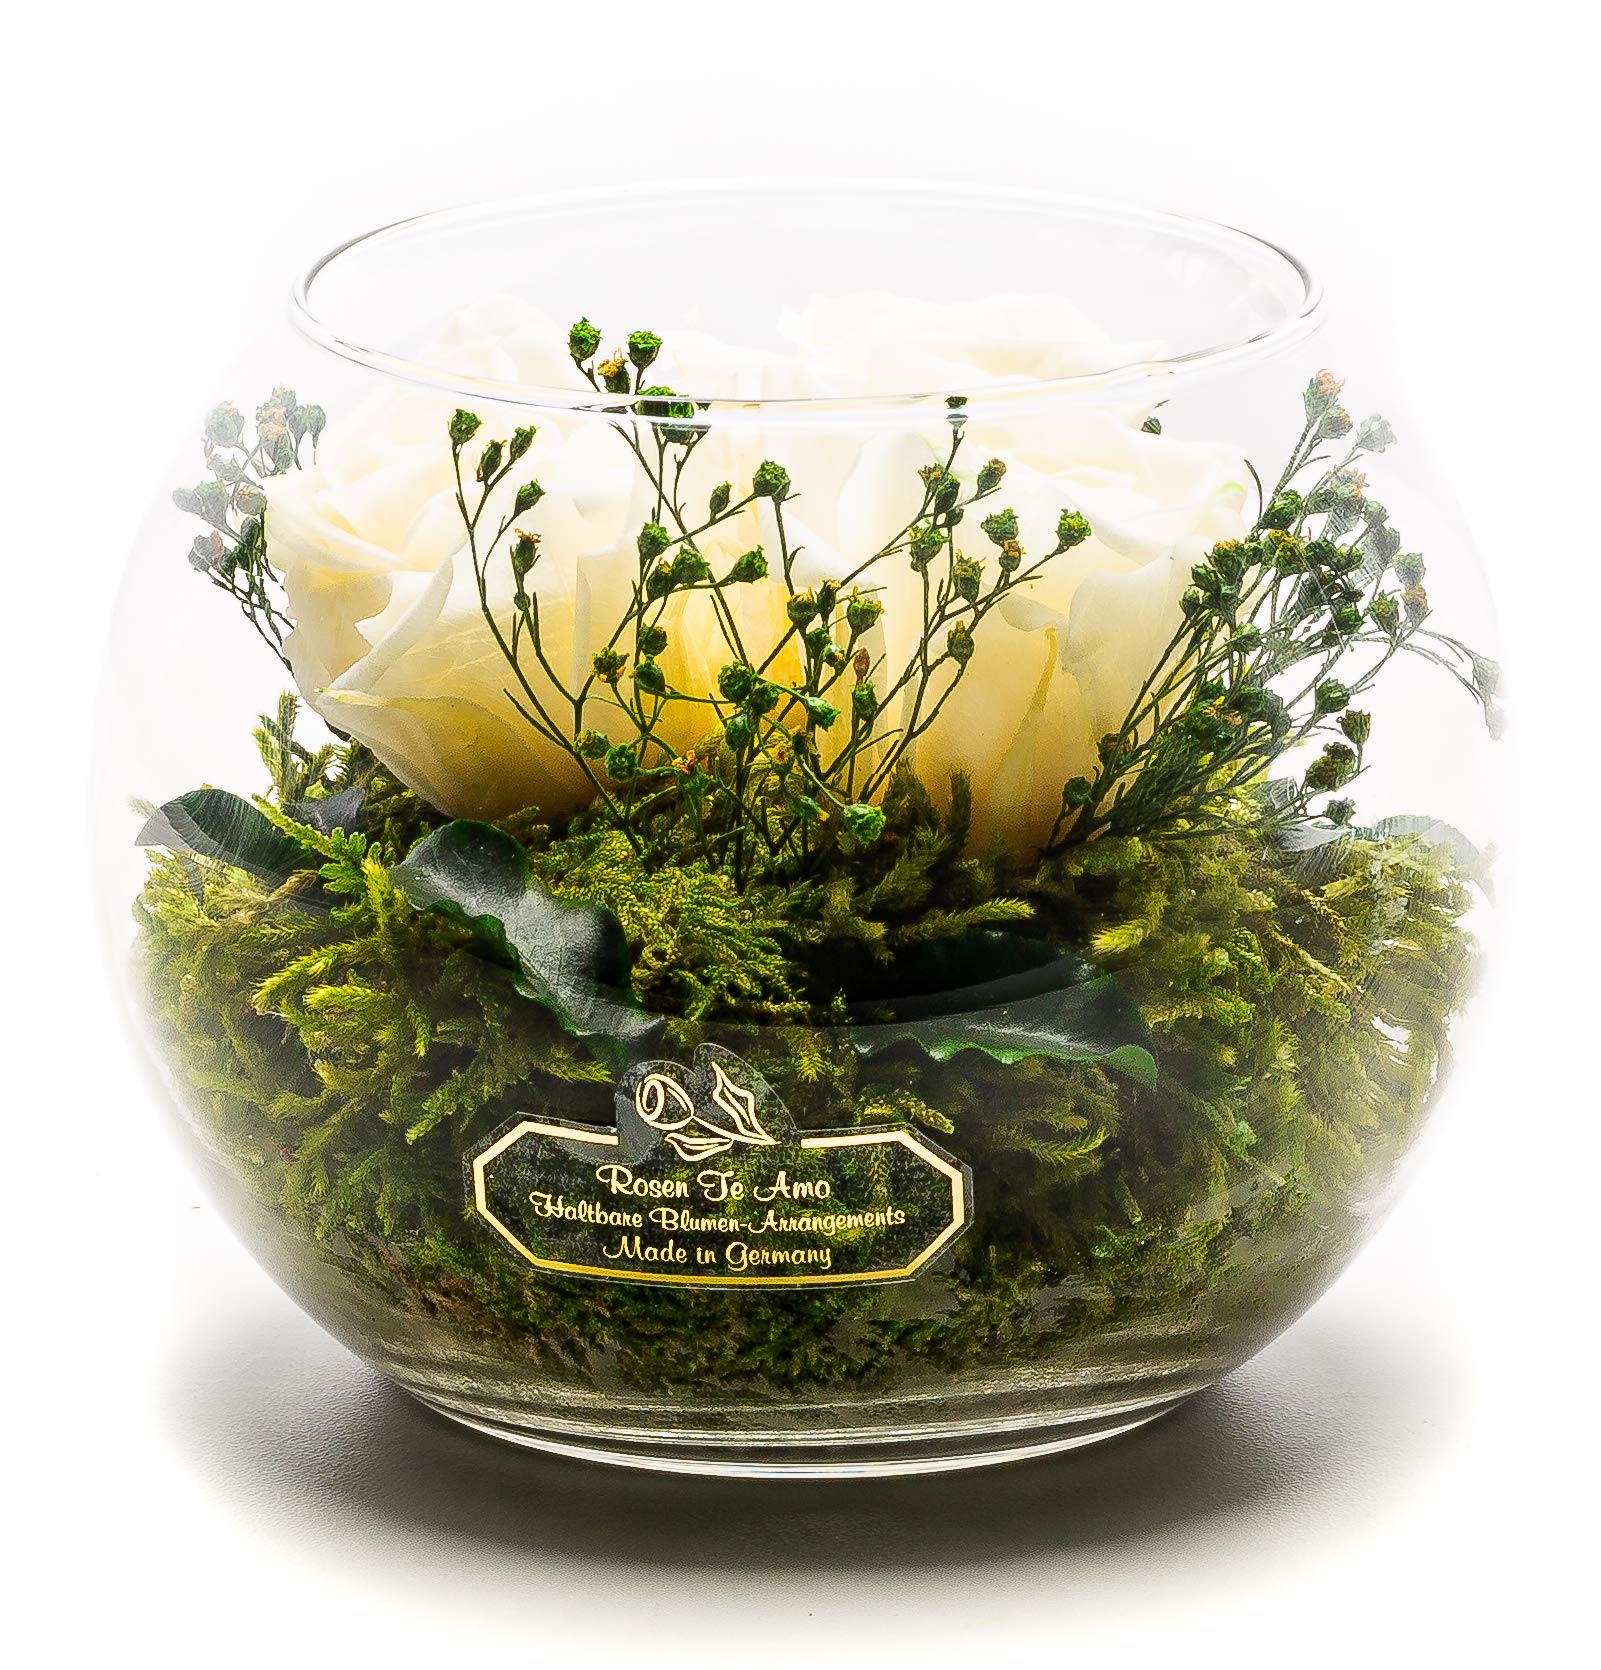 Rosen-Te-Amo | Muttertag Infinity Rosen | konservierte ewige Rosen Glas-Vase | duftend | handgefertigt mit echten Deko-Foliage | Blumenstrauß langlebiges Design | Geschenk Frauen Mama Freundin Oma